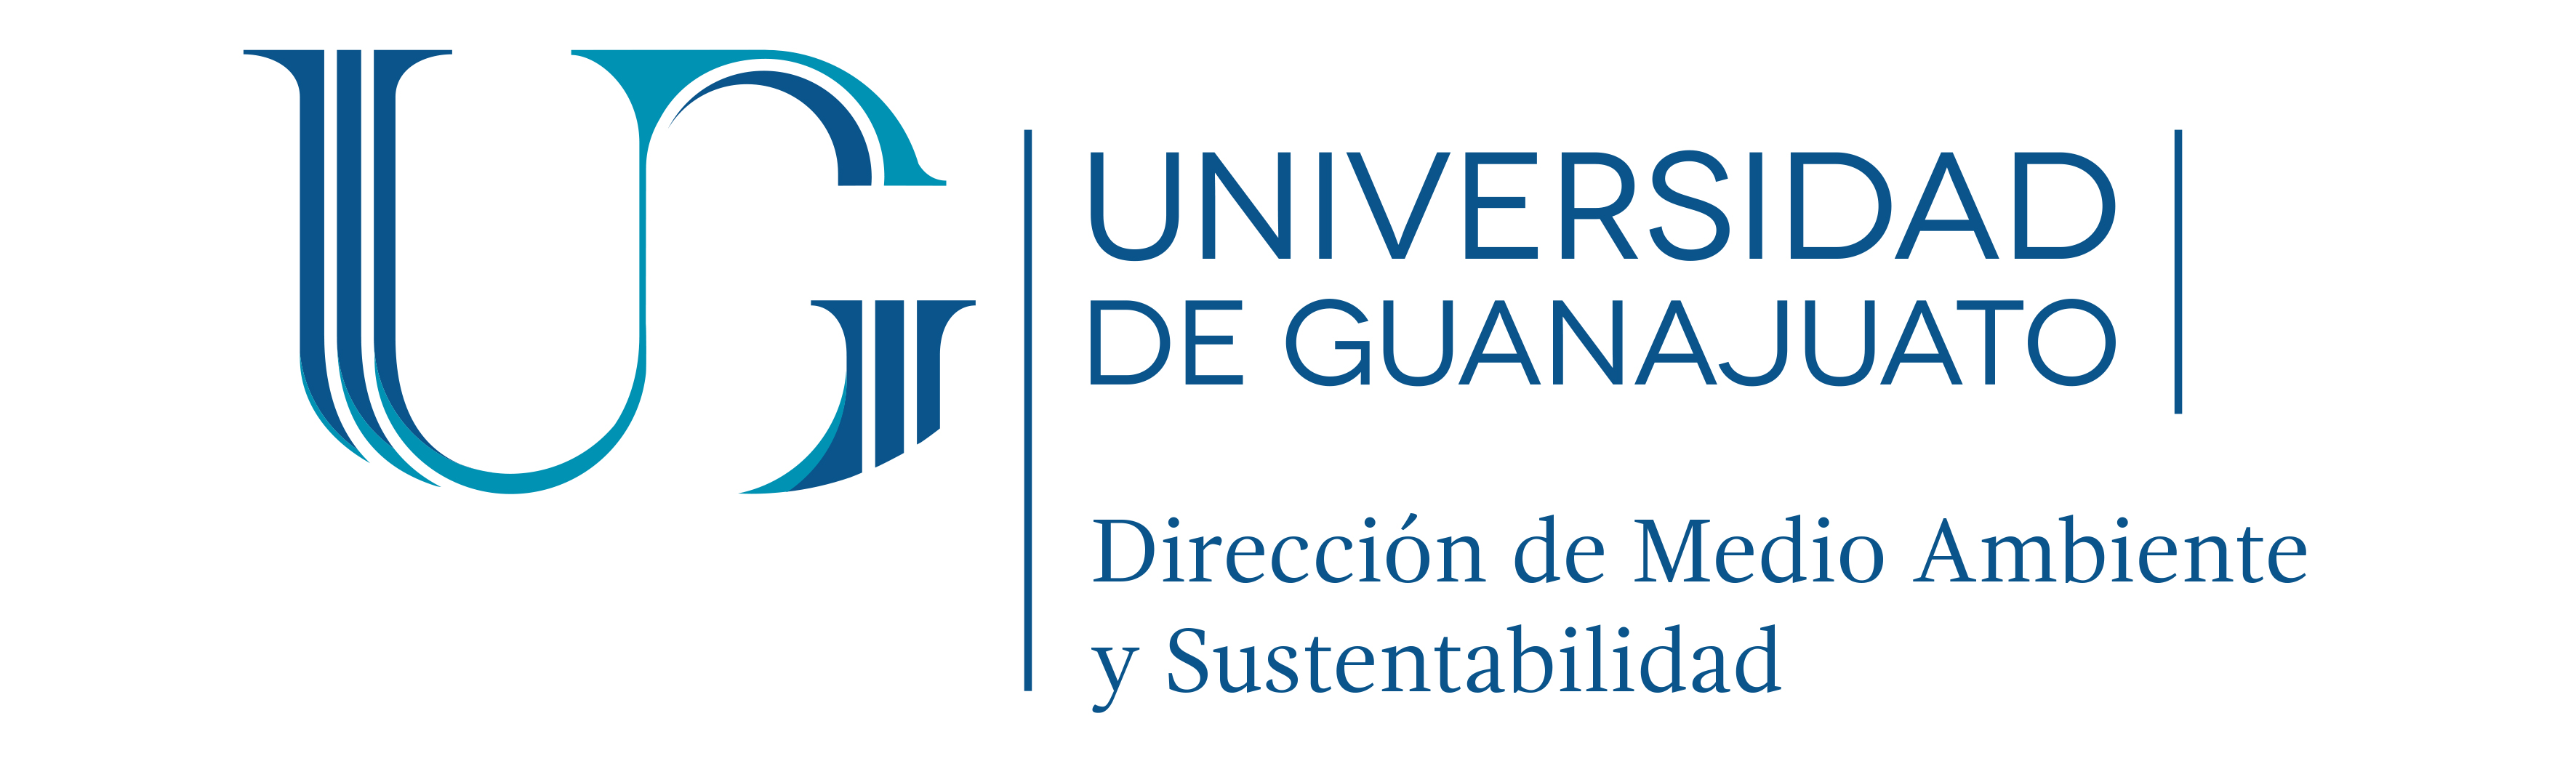 Dirección de Medio Ambiente de la Universidad de Guanajuato